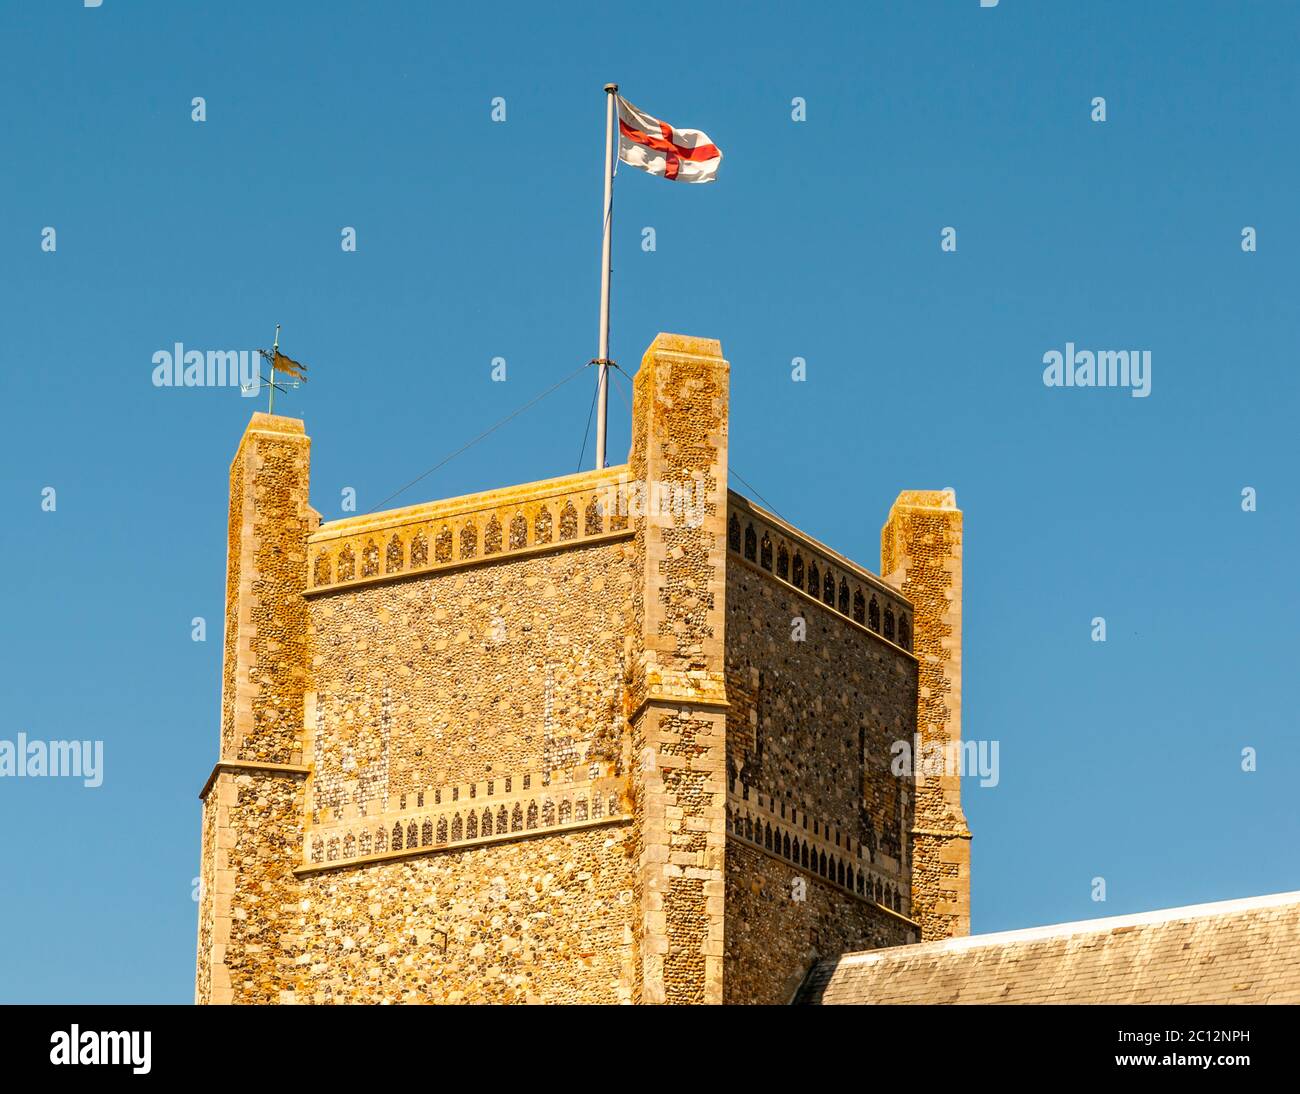 Le drapeau anglais flotte sur une tour massive dans le Suffolk est, en Angleterre Banque D'Images